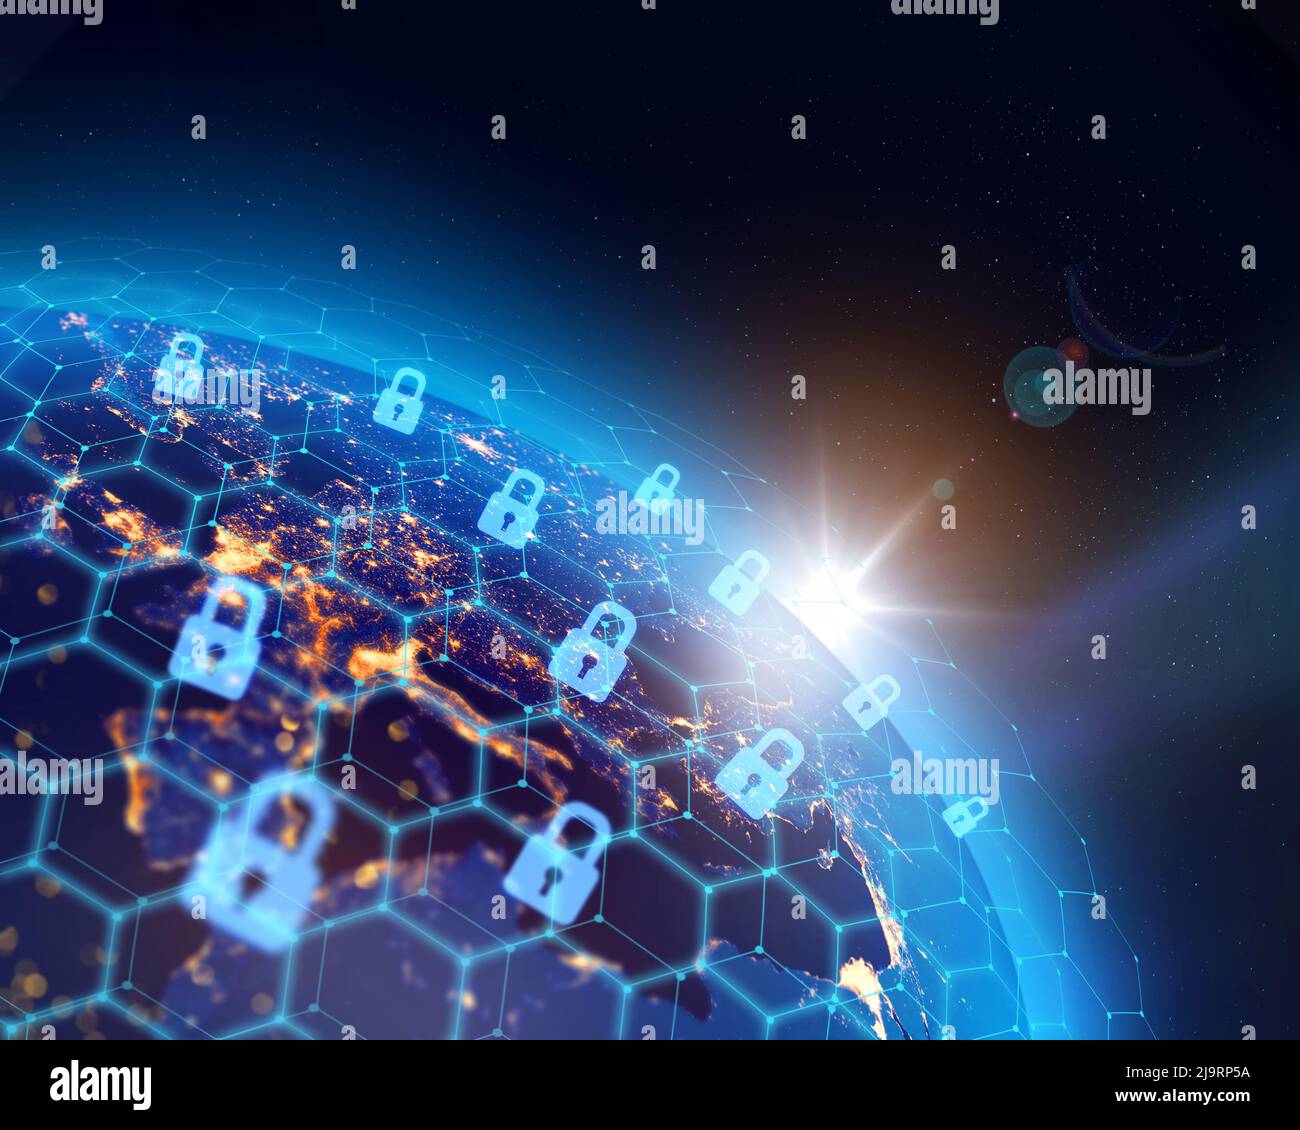 Planet Erde, Stadtlichter und weltweite digitale binäre Datensicherheitsnetzinfrastruktur . Einige Elemente des Bildes, die von der NASA eingerichtet wurden. Stockfoto